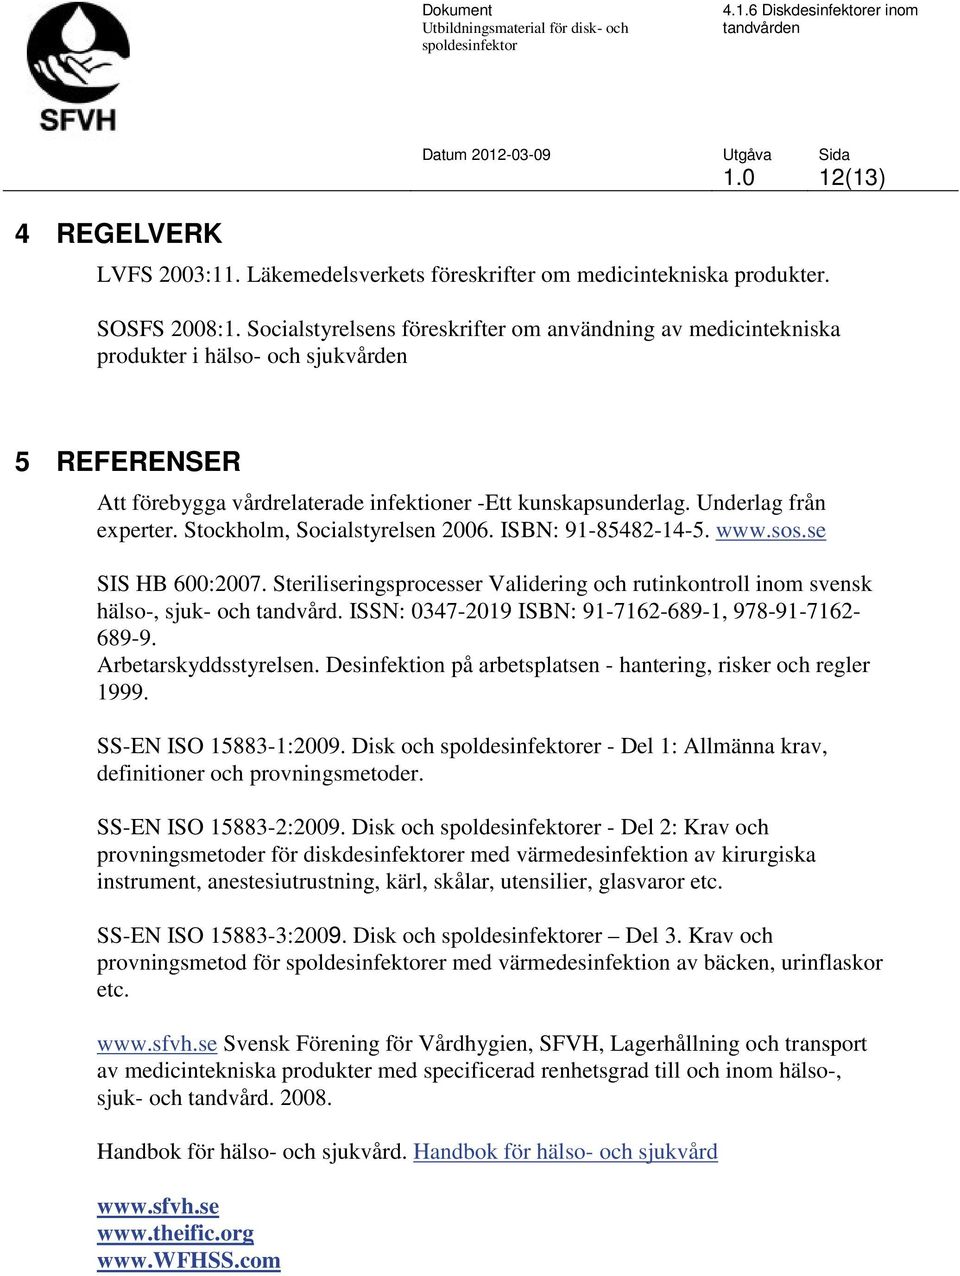 Stockholm, Socialstyrelsen 2006. ISBN: 91-85482-14-5. www.sos.se SIS HB 600:2007. Steriliseringsprocesser Validering och rutinkontroll inom svensk hälso-, sjuk- och tandvård.